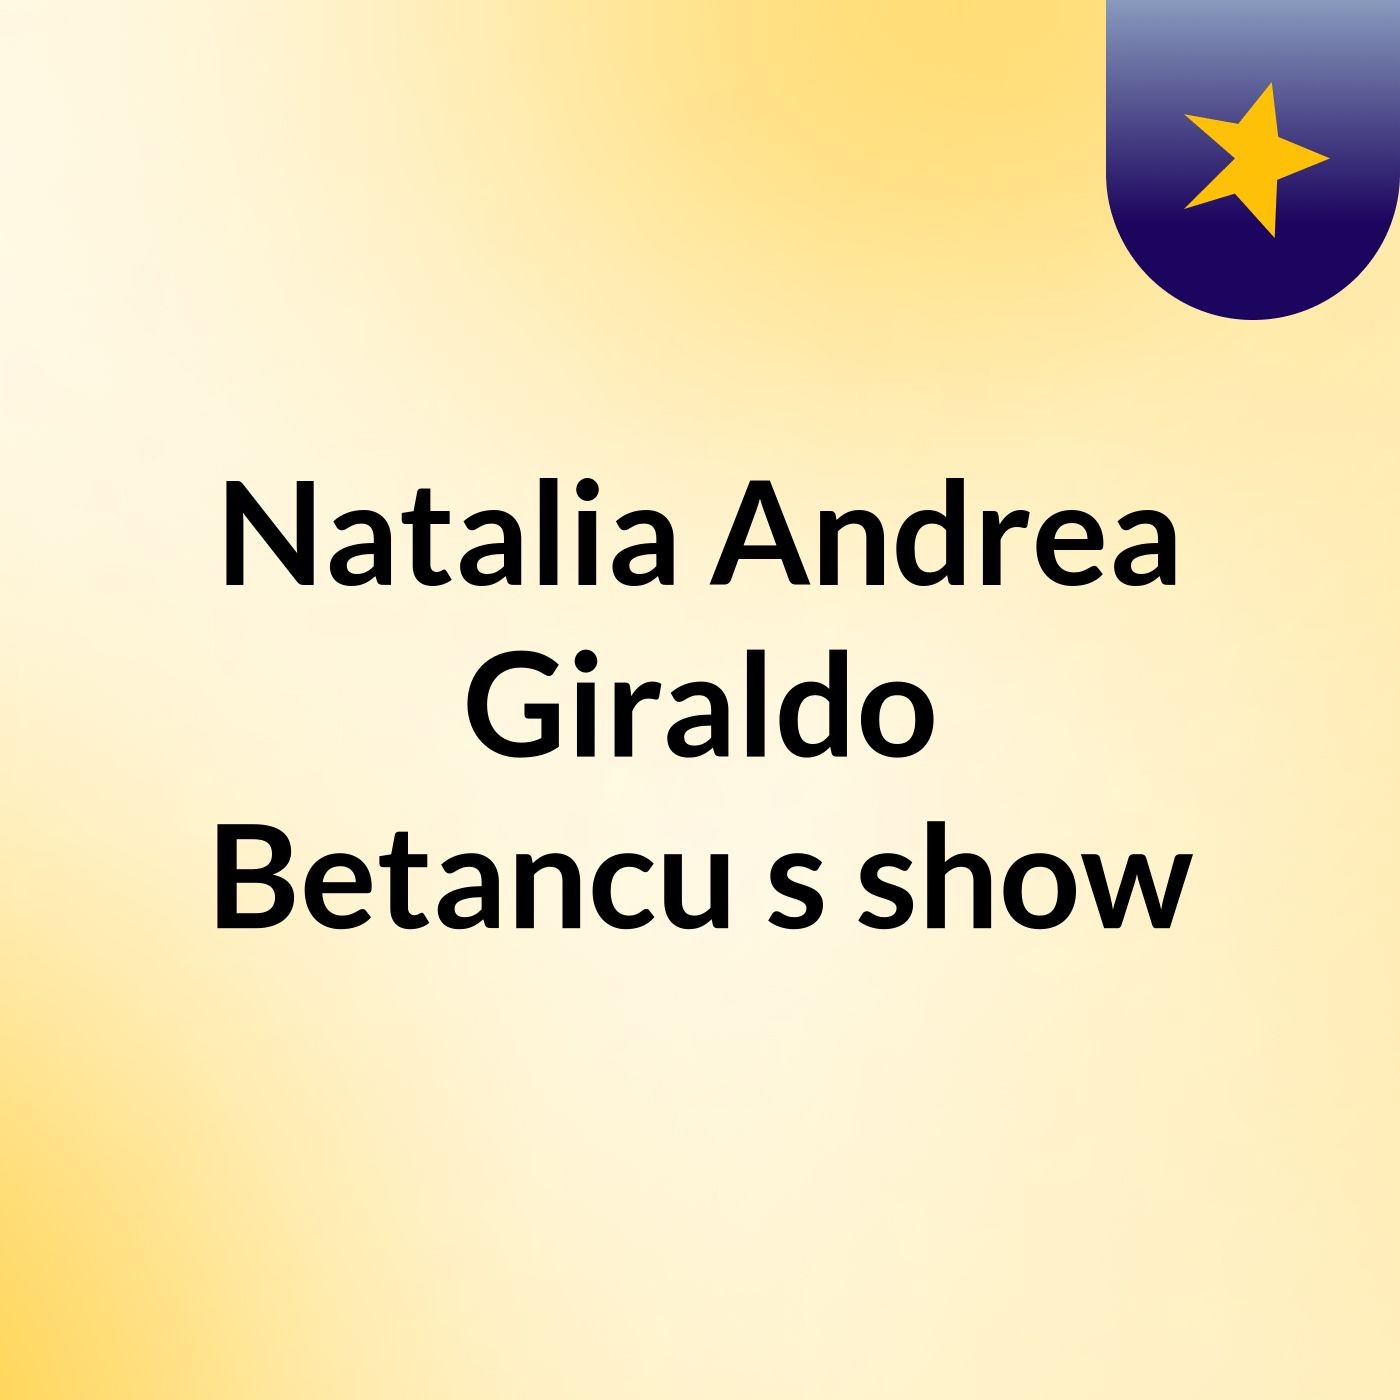 Natalia Andrea Giraldo Betancu's show